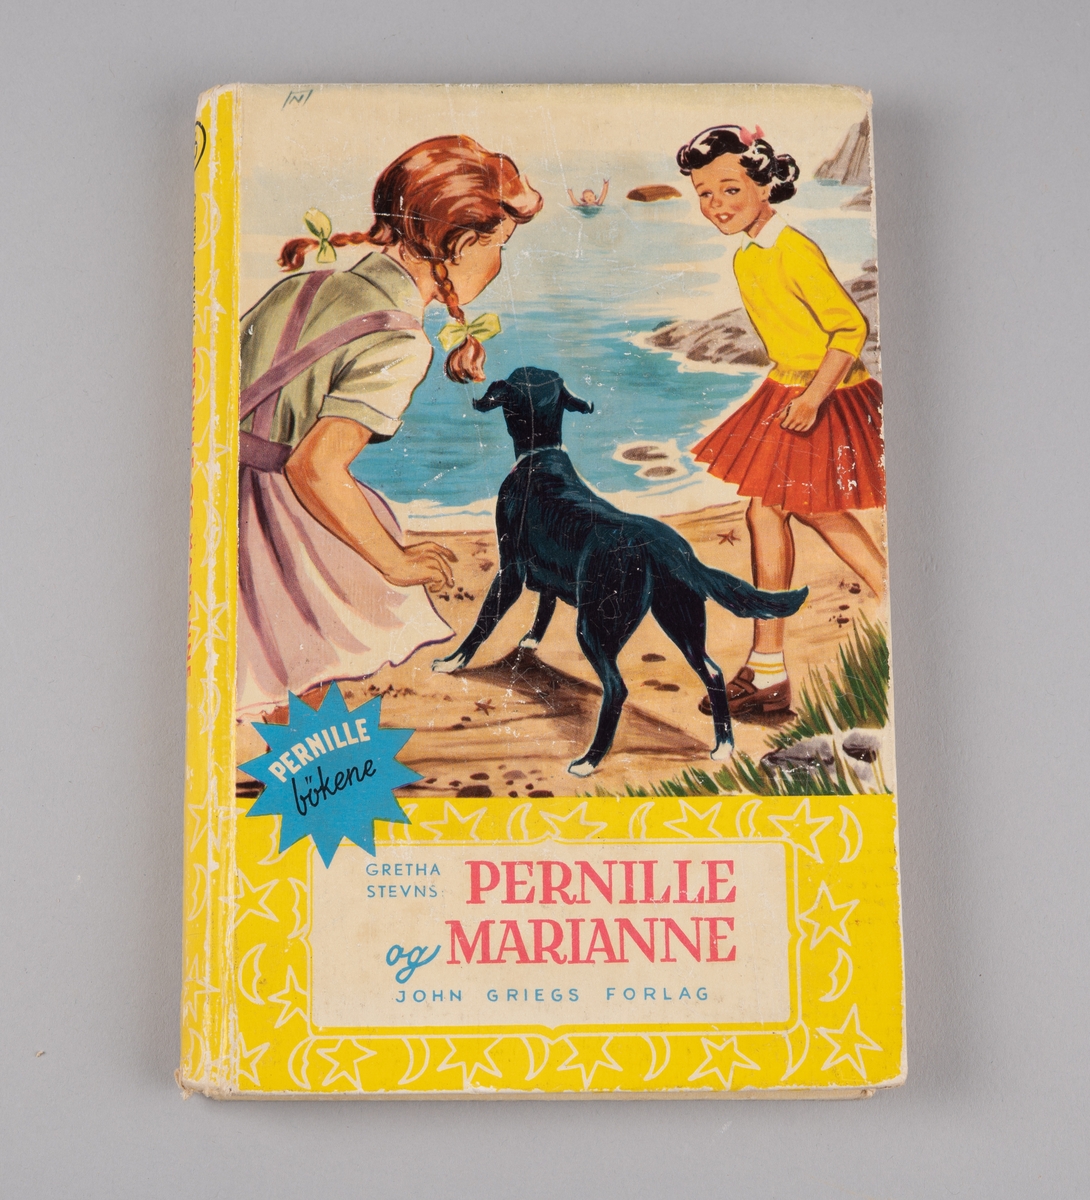 En Pernille-bok med hardt omslåg. Den er gul og viser et bilde med to jenter på stranden med en svart hund som ser mot en person i vannet.